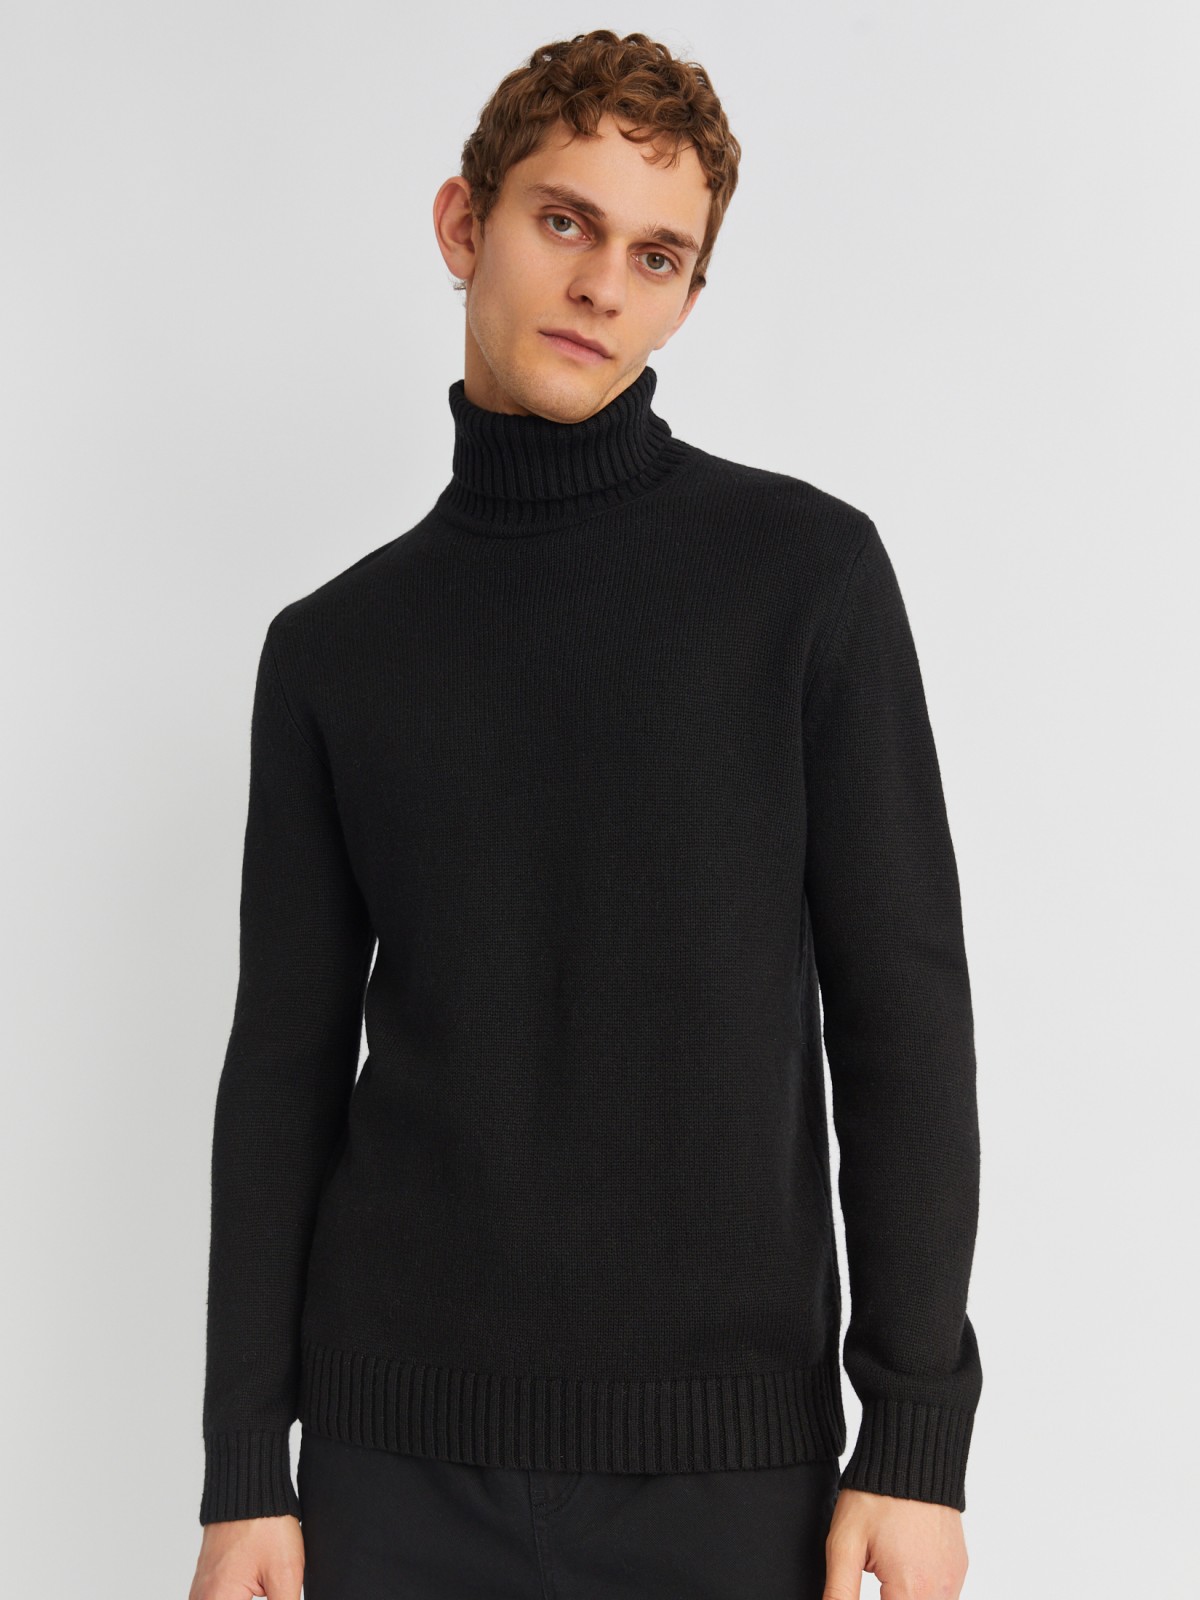 Вязаная шерстяная водолазка-свитер с горлом zolla 013436163072, цвет черный, размер M - фото 4